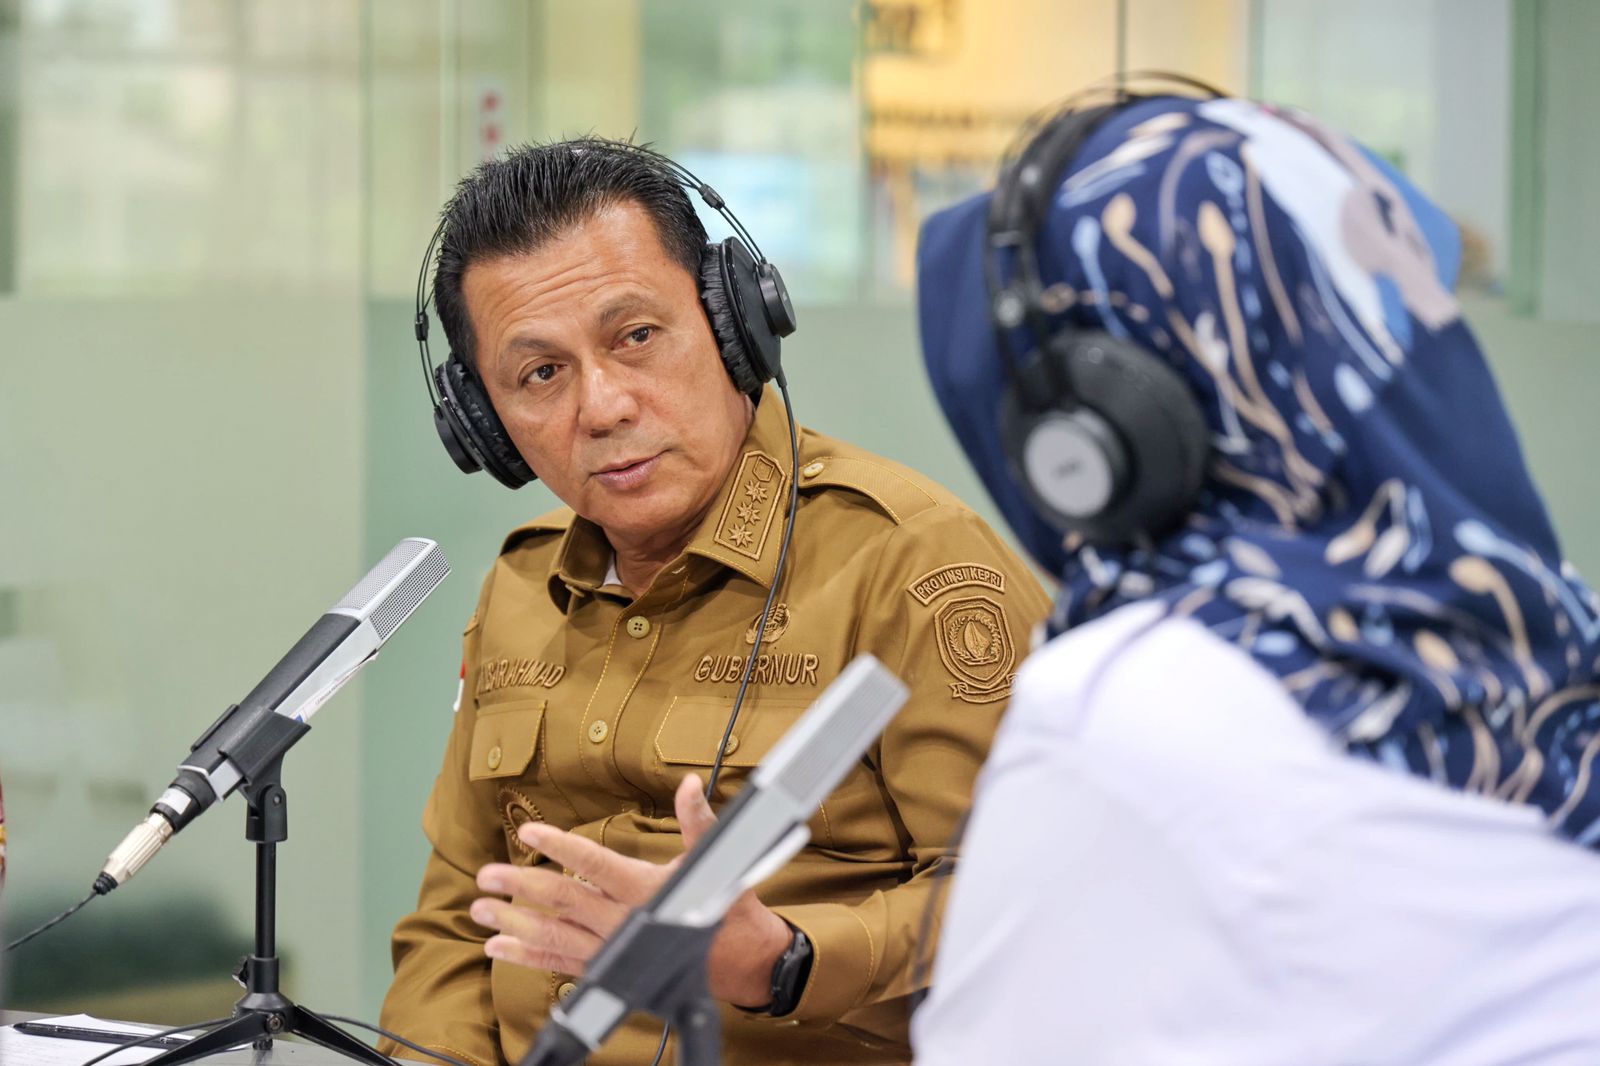 Gubernur Ansar Imbau Masyarakat Ikut Mengawasi Pesta Demokrasi, untuk Pemilu Bersih, Jujur dan Damai